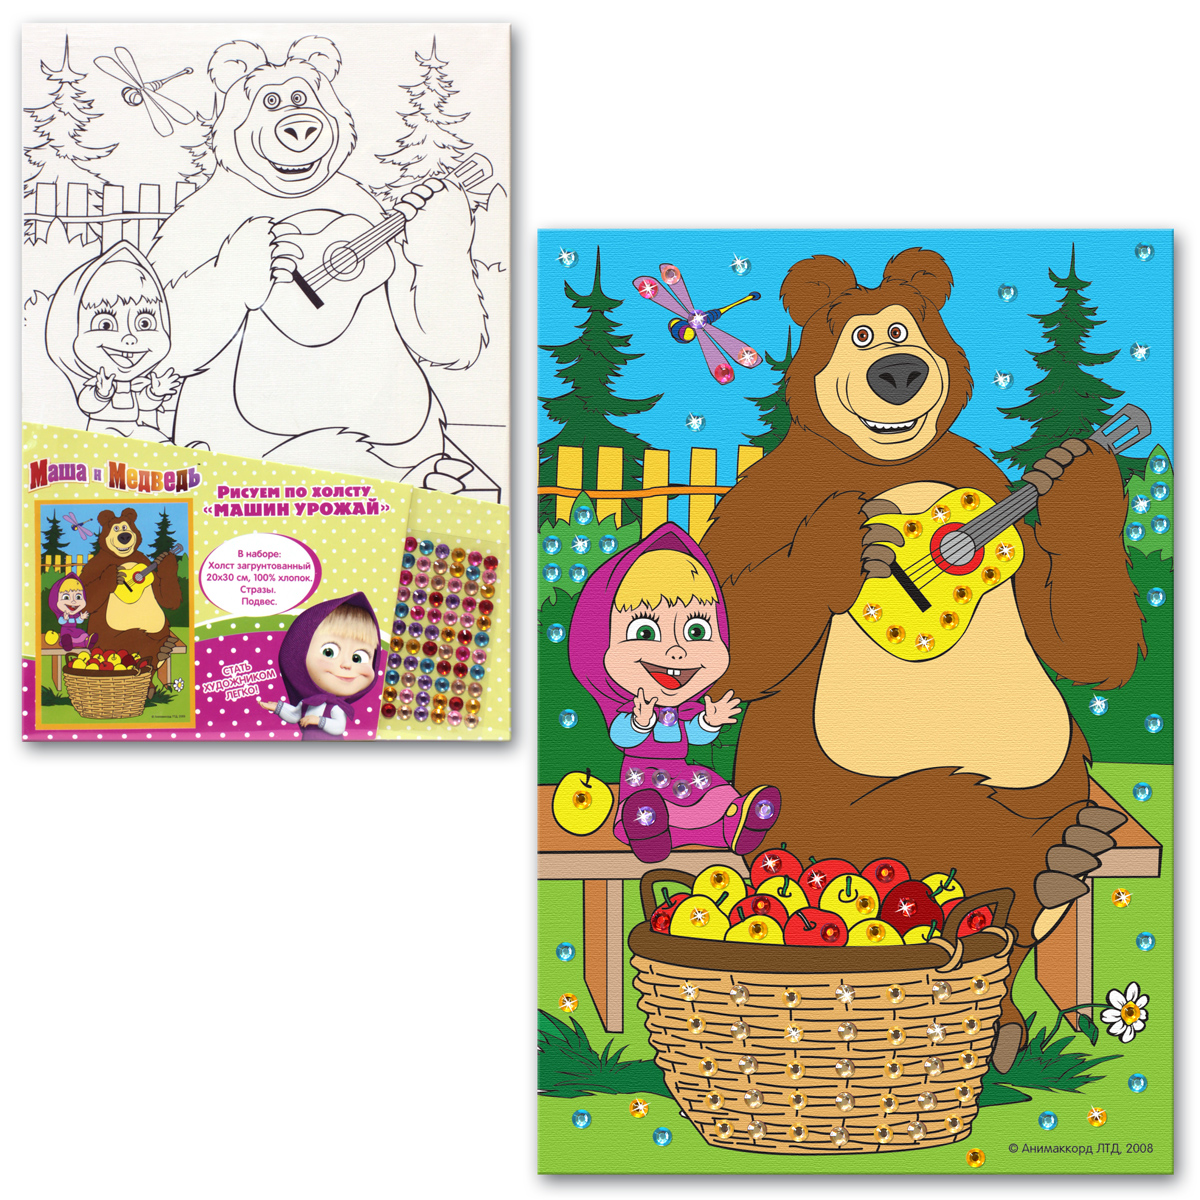 Маша и медведь краски фонк. Маша и медведь рисунок. Маша и медведь рисовать. Рисовать Машу и медведь. Маша и медведь нарисовать.